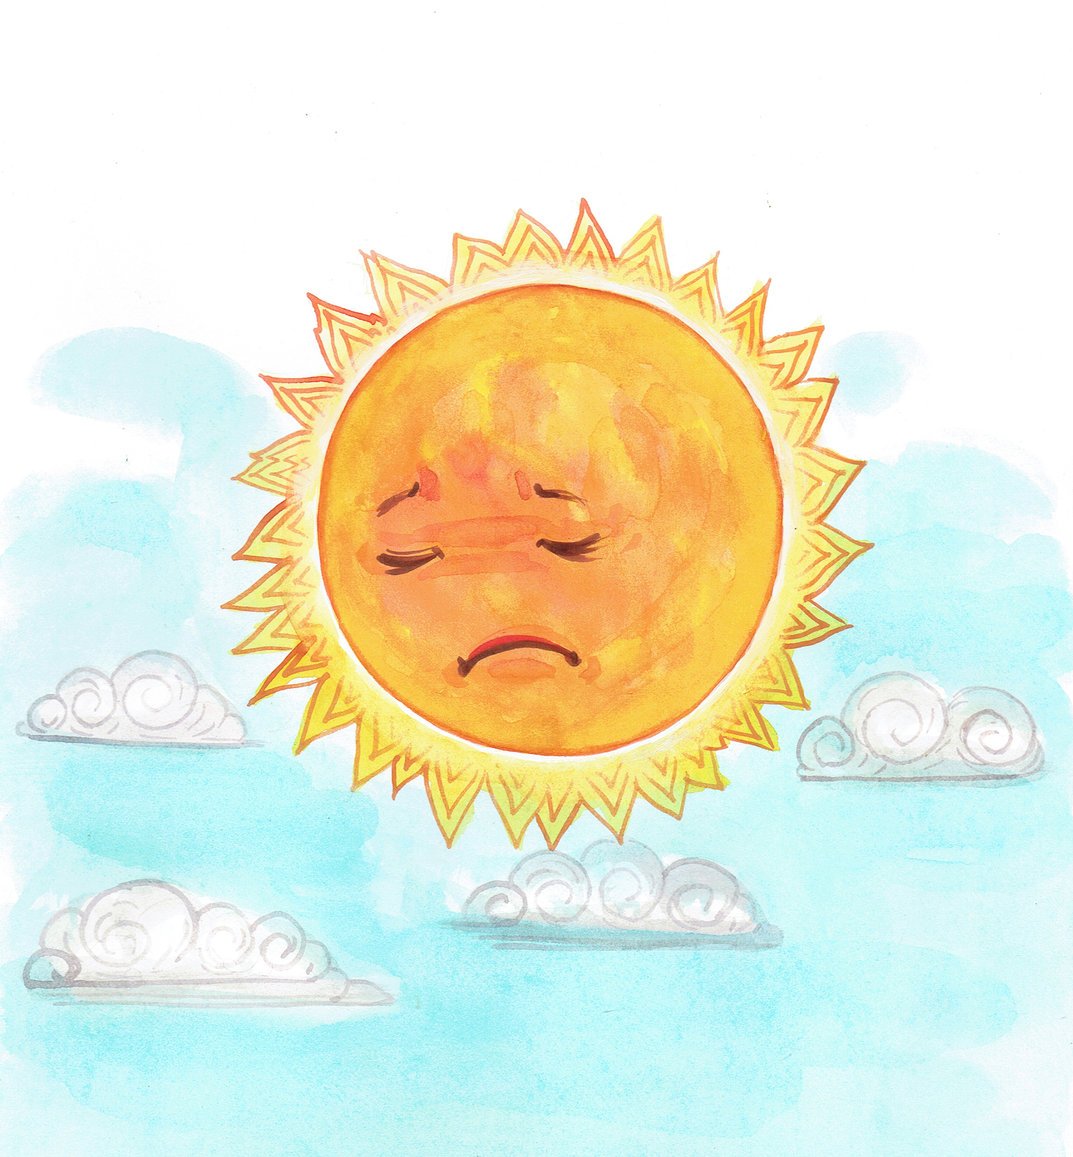 Image of a sad sun